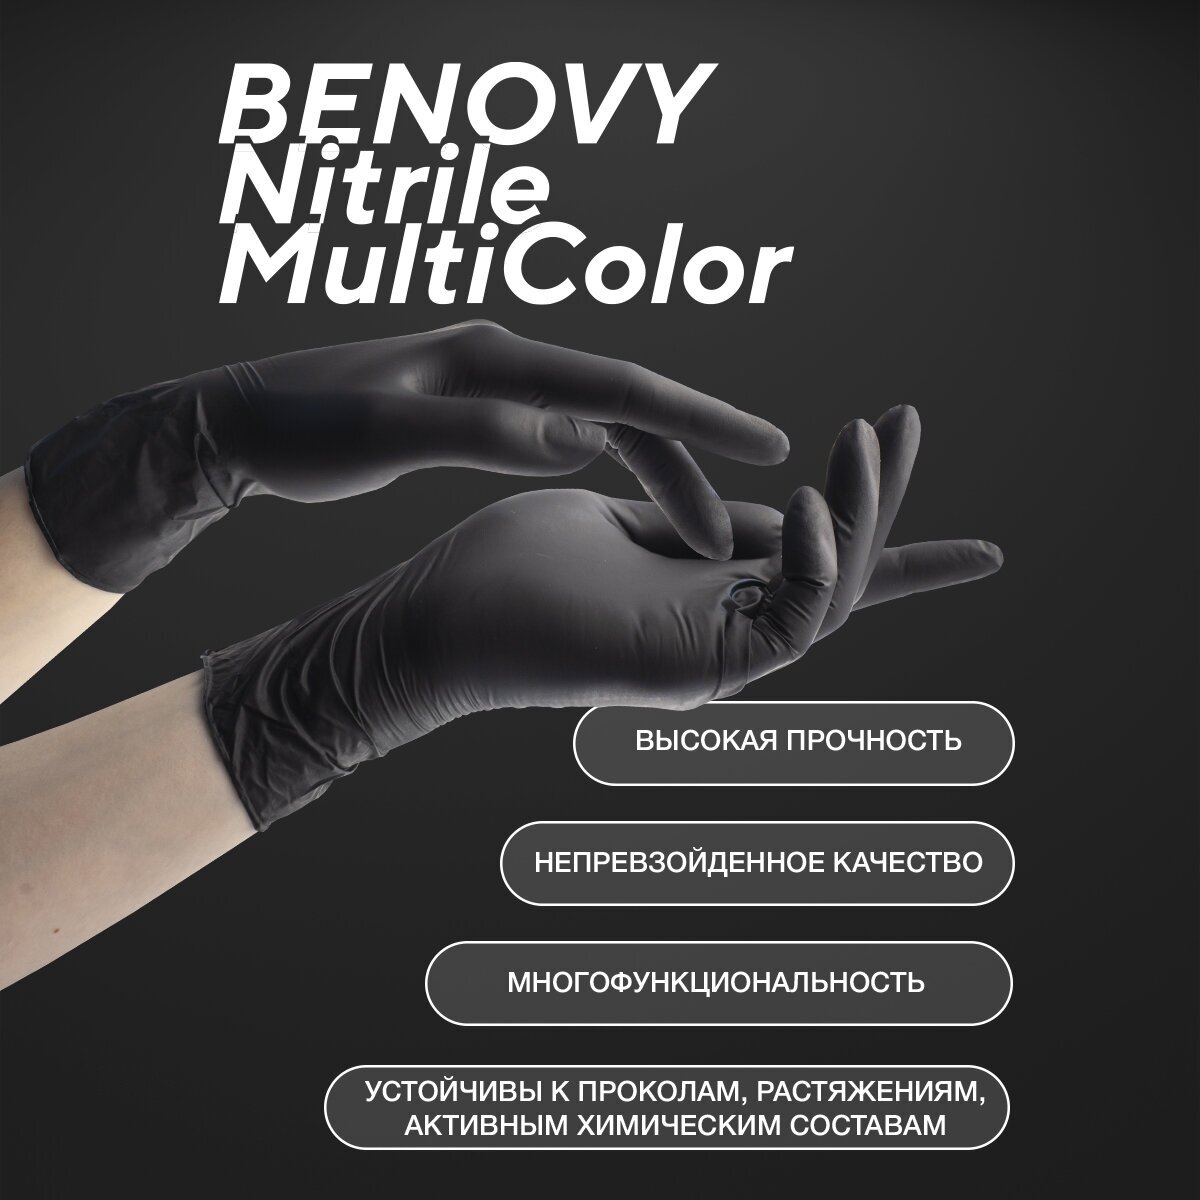 Перчатки смотровые Benovy Nitrile MultiColor текстурированные на пальцах, 50 пар, размер: L, цвет: черный, 1 уп.